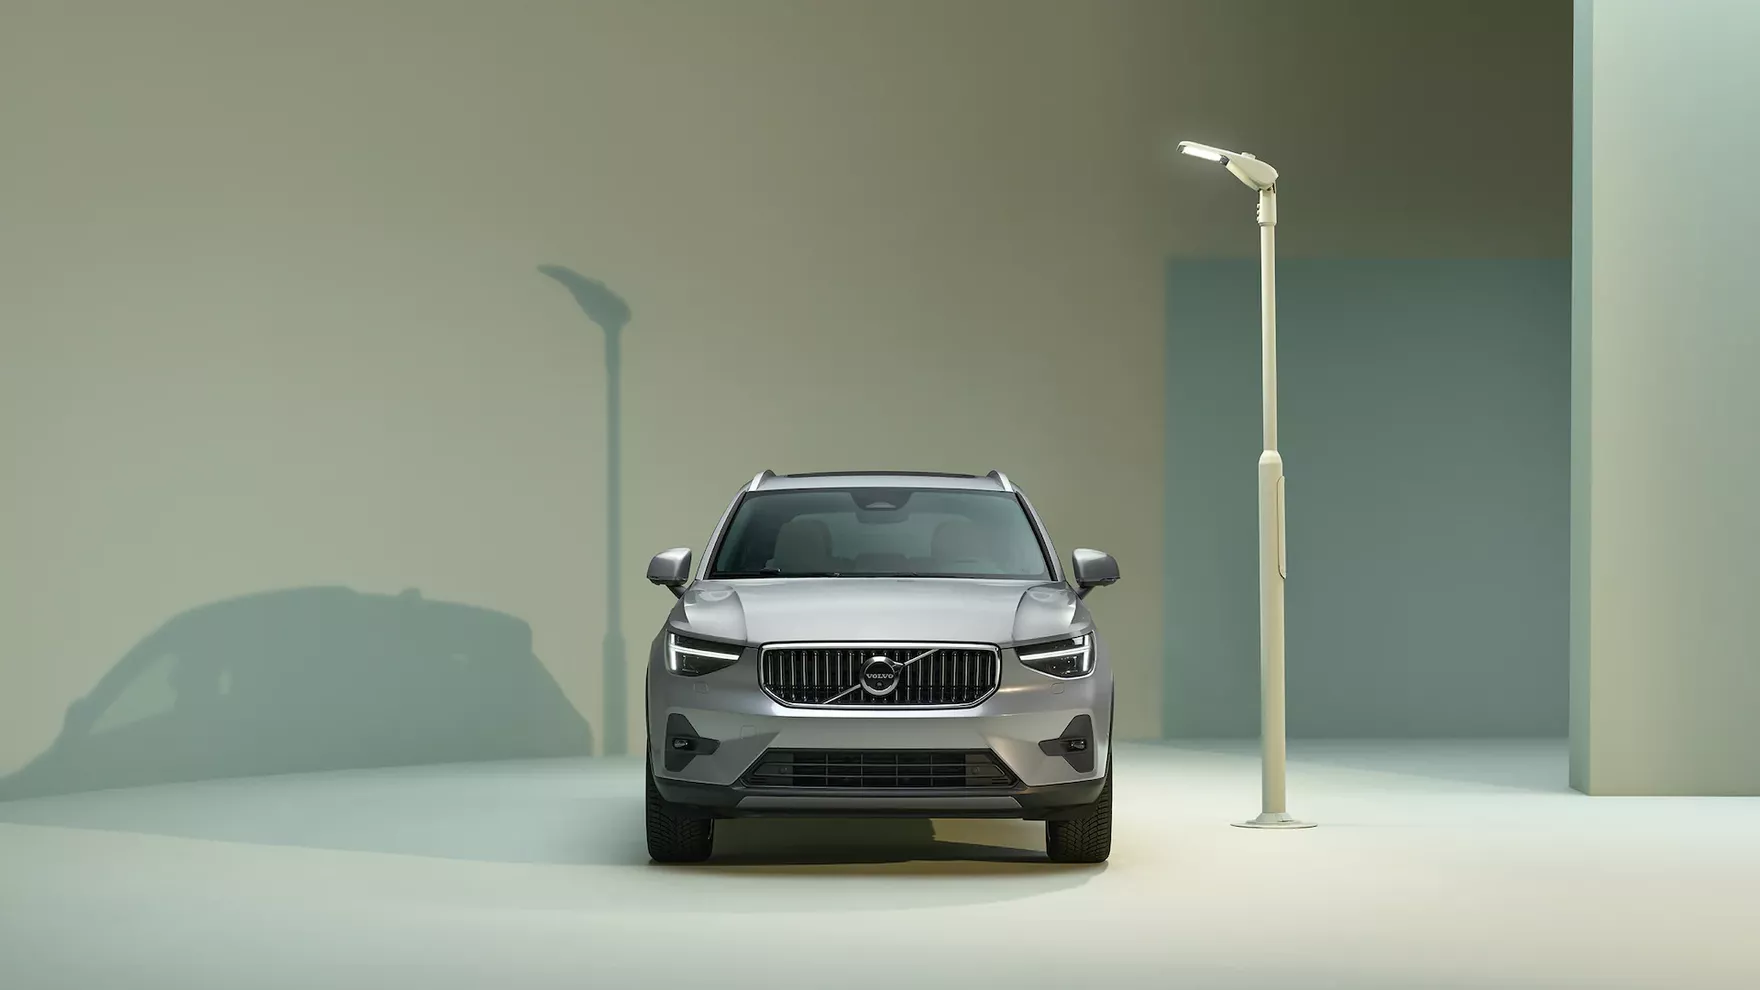 Posmakuj szwedzkiego świata premium. Komfortowe Volvo XC40 już od 1500 zł miesięcznie